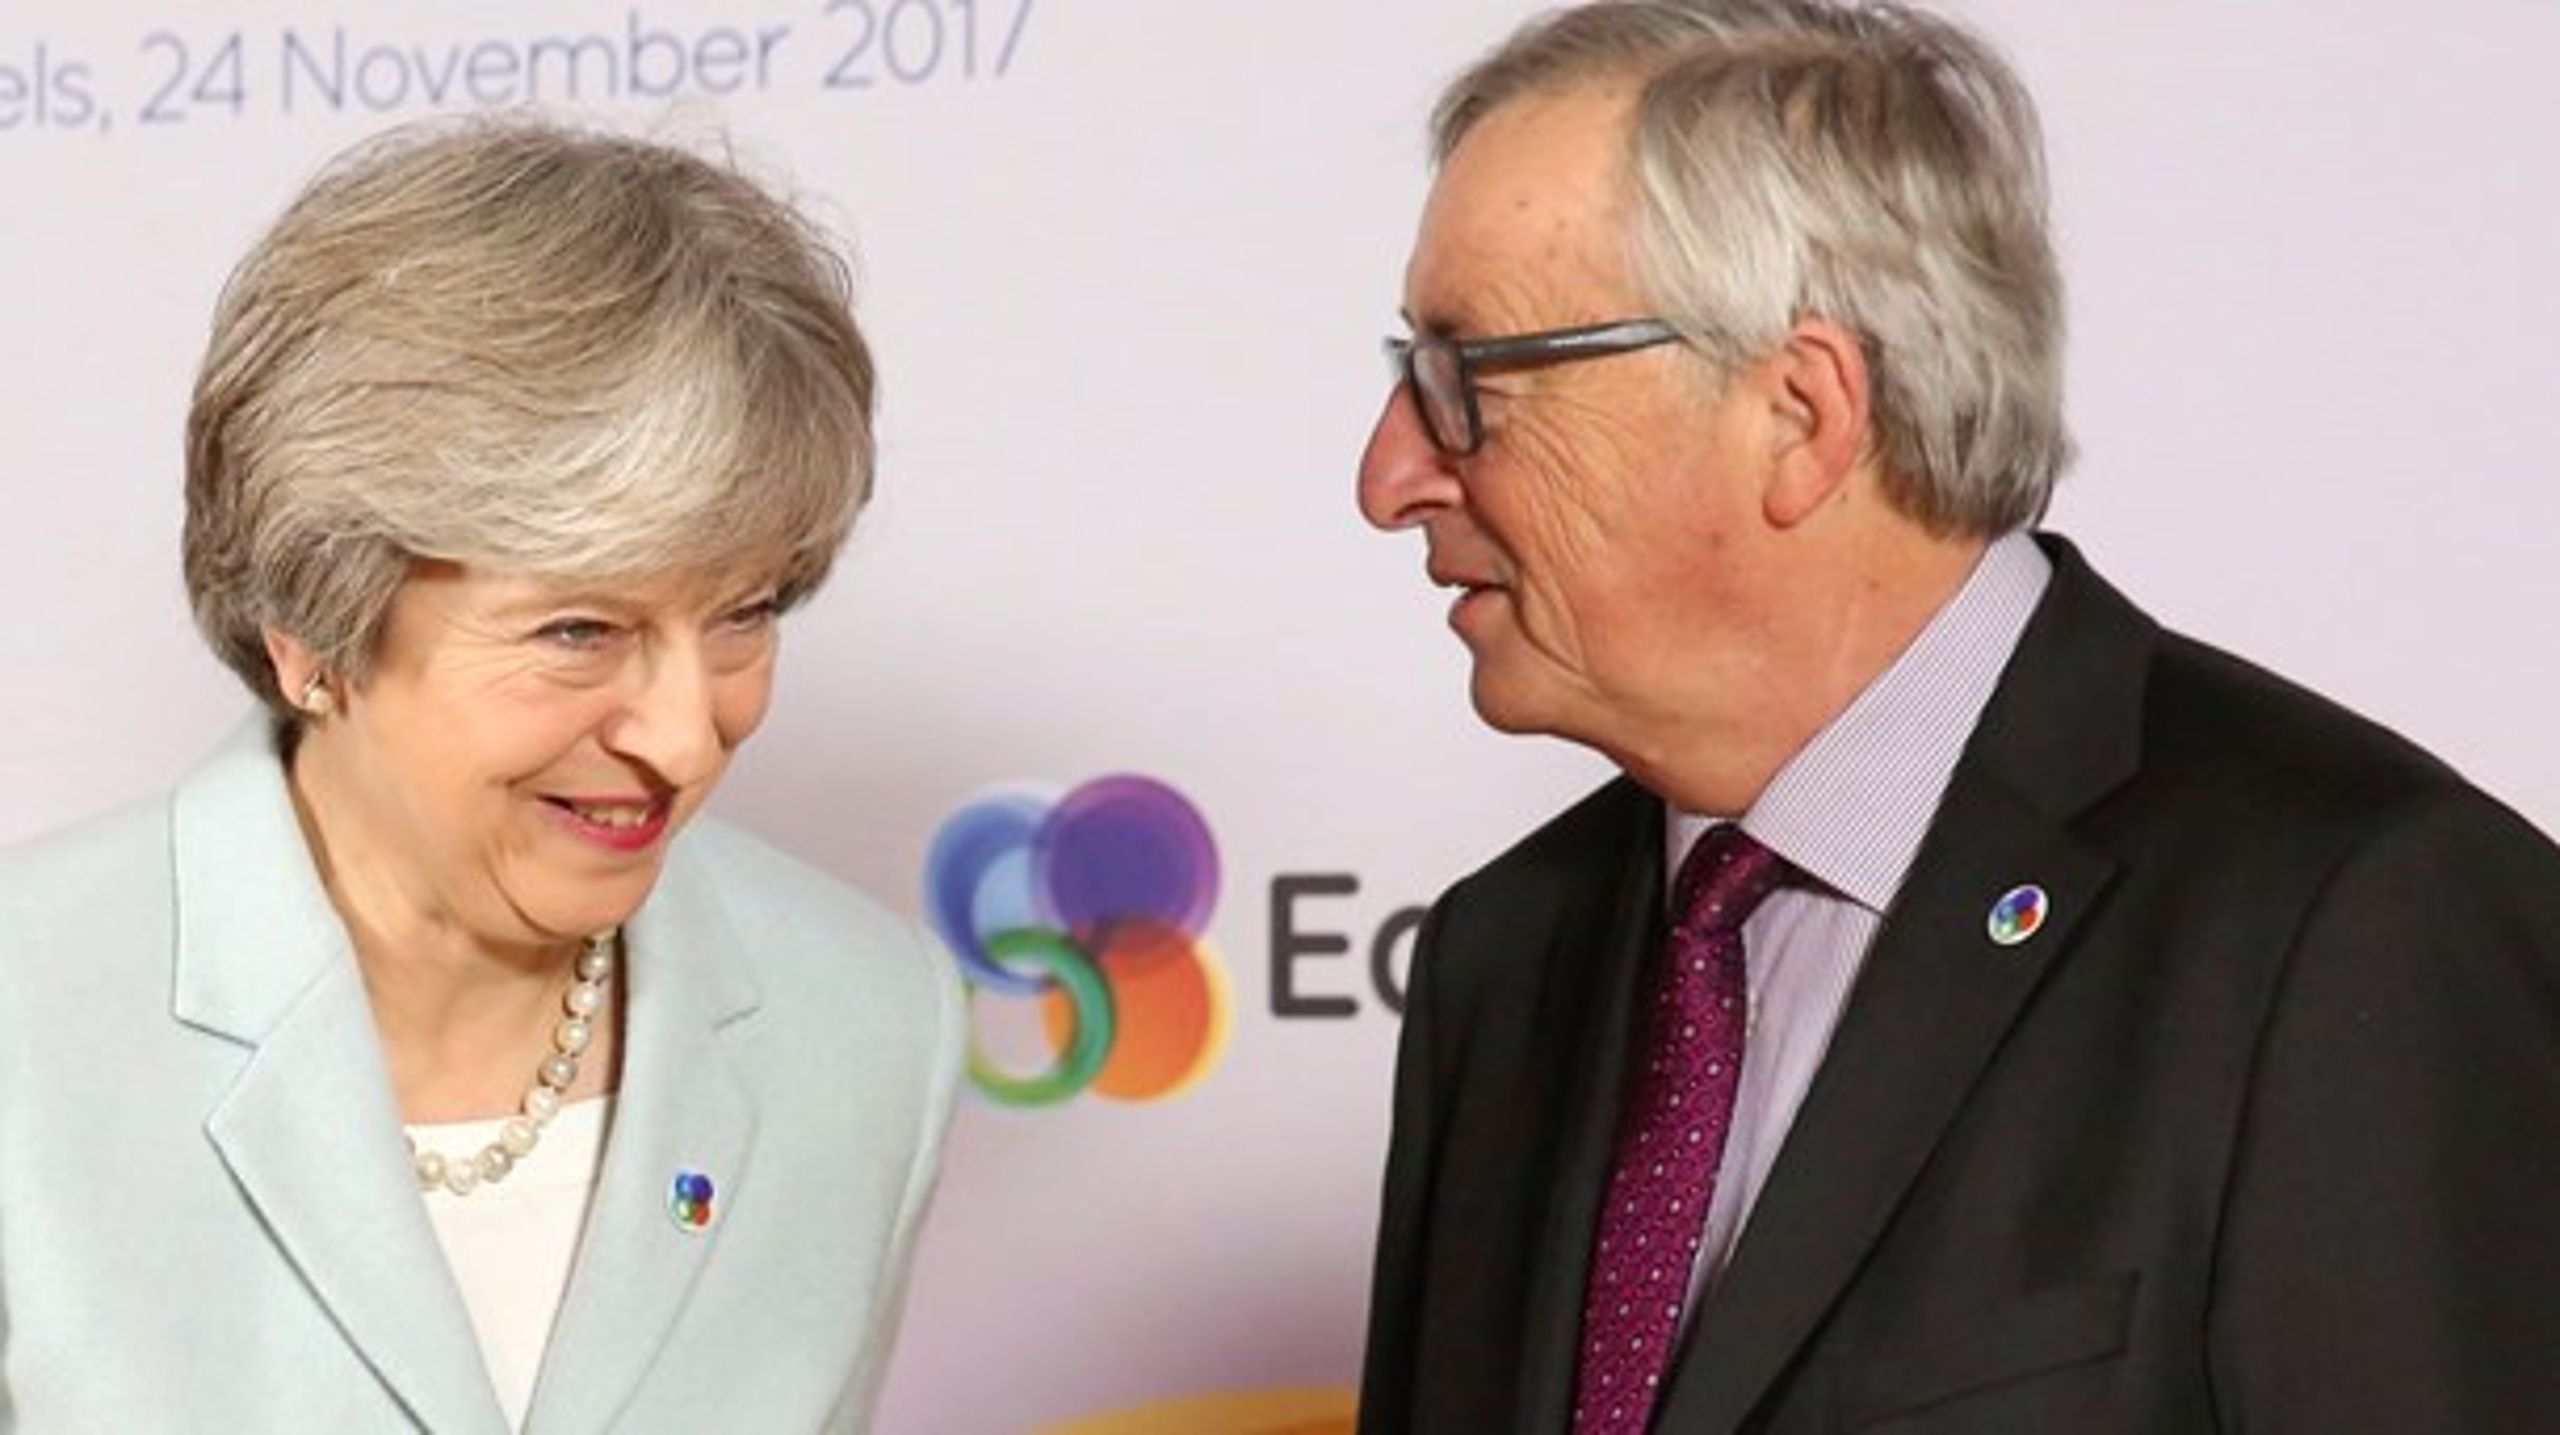 Mandag udløber den frist, som de resterende 27 EU-lande har sat for briterne til at komme med et forslag, der kan bringe skub i skilsmisseforhandlingerne mellem parterne. Derfor kommer den britiske premierminister, Theresa May, til Bruxelles for at mødes med EU-Kommissionens formand, Jean-Claude Juncker.